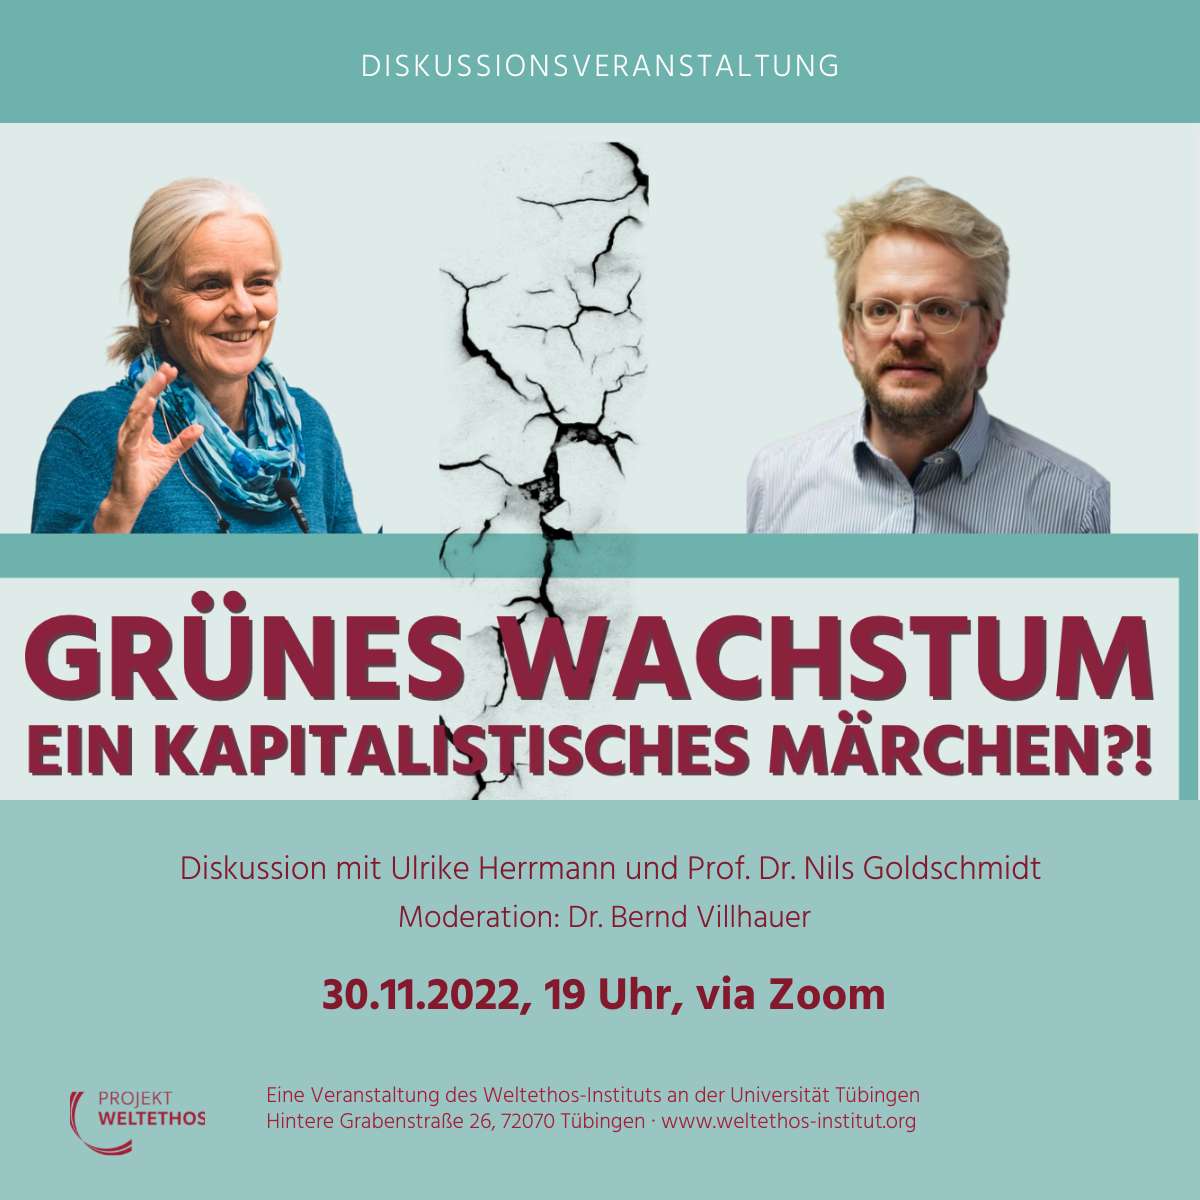 Sharepic zur Veranstaltung "Grünes Wachstum - Ein kapitalistisches Märchen?!"